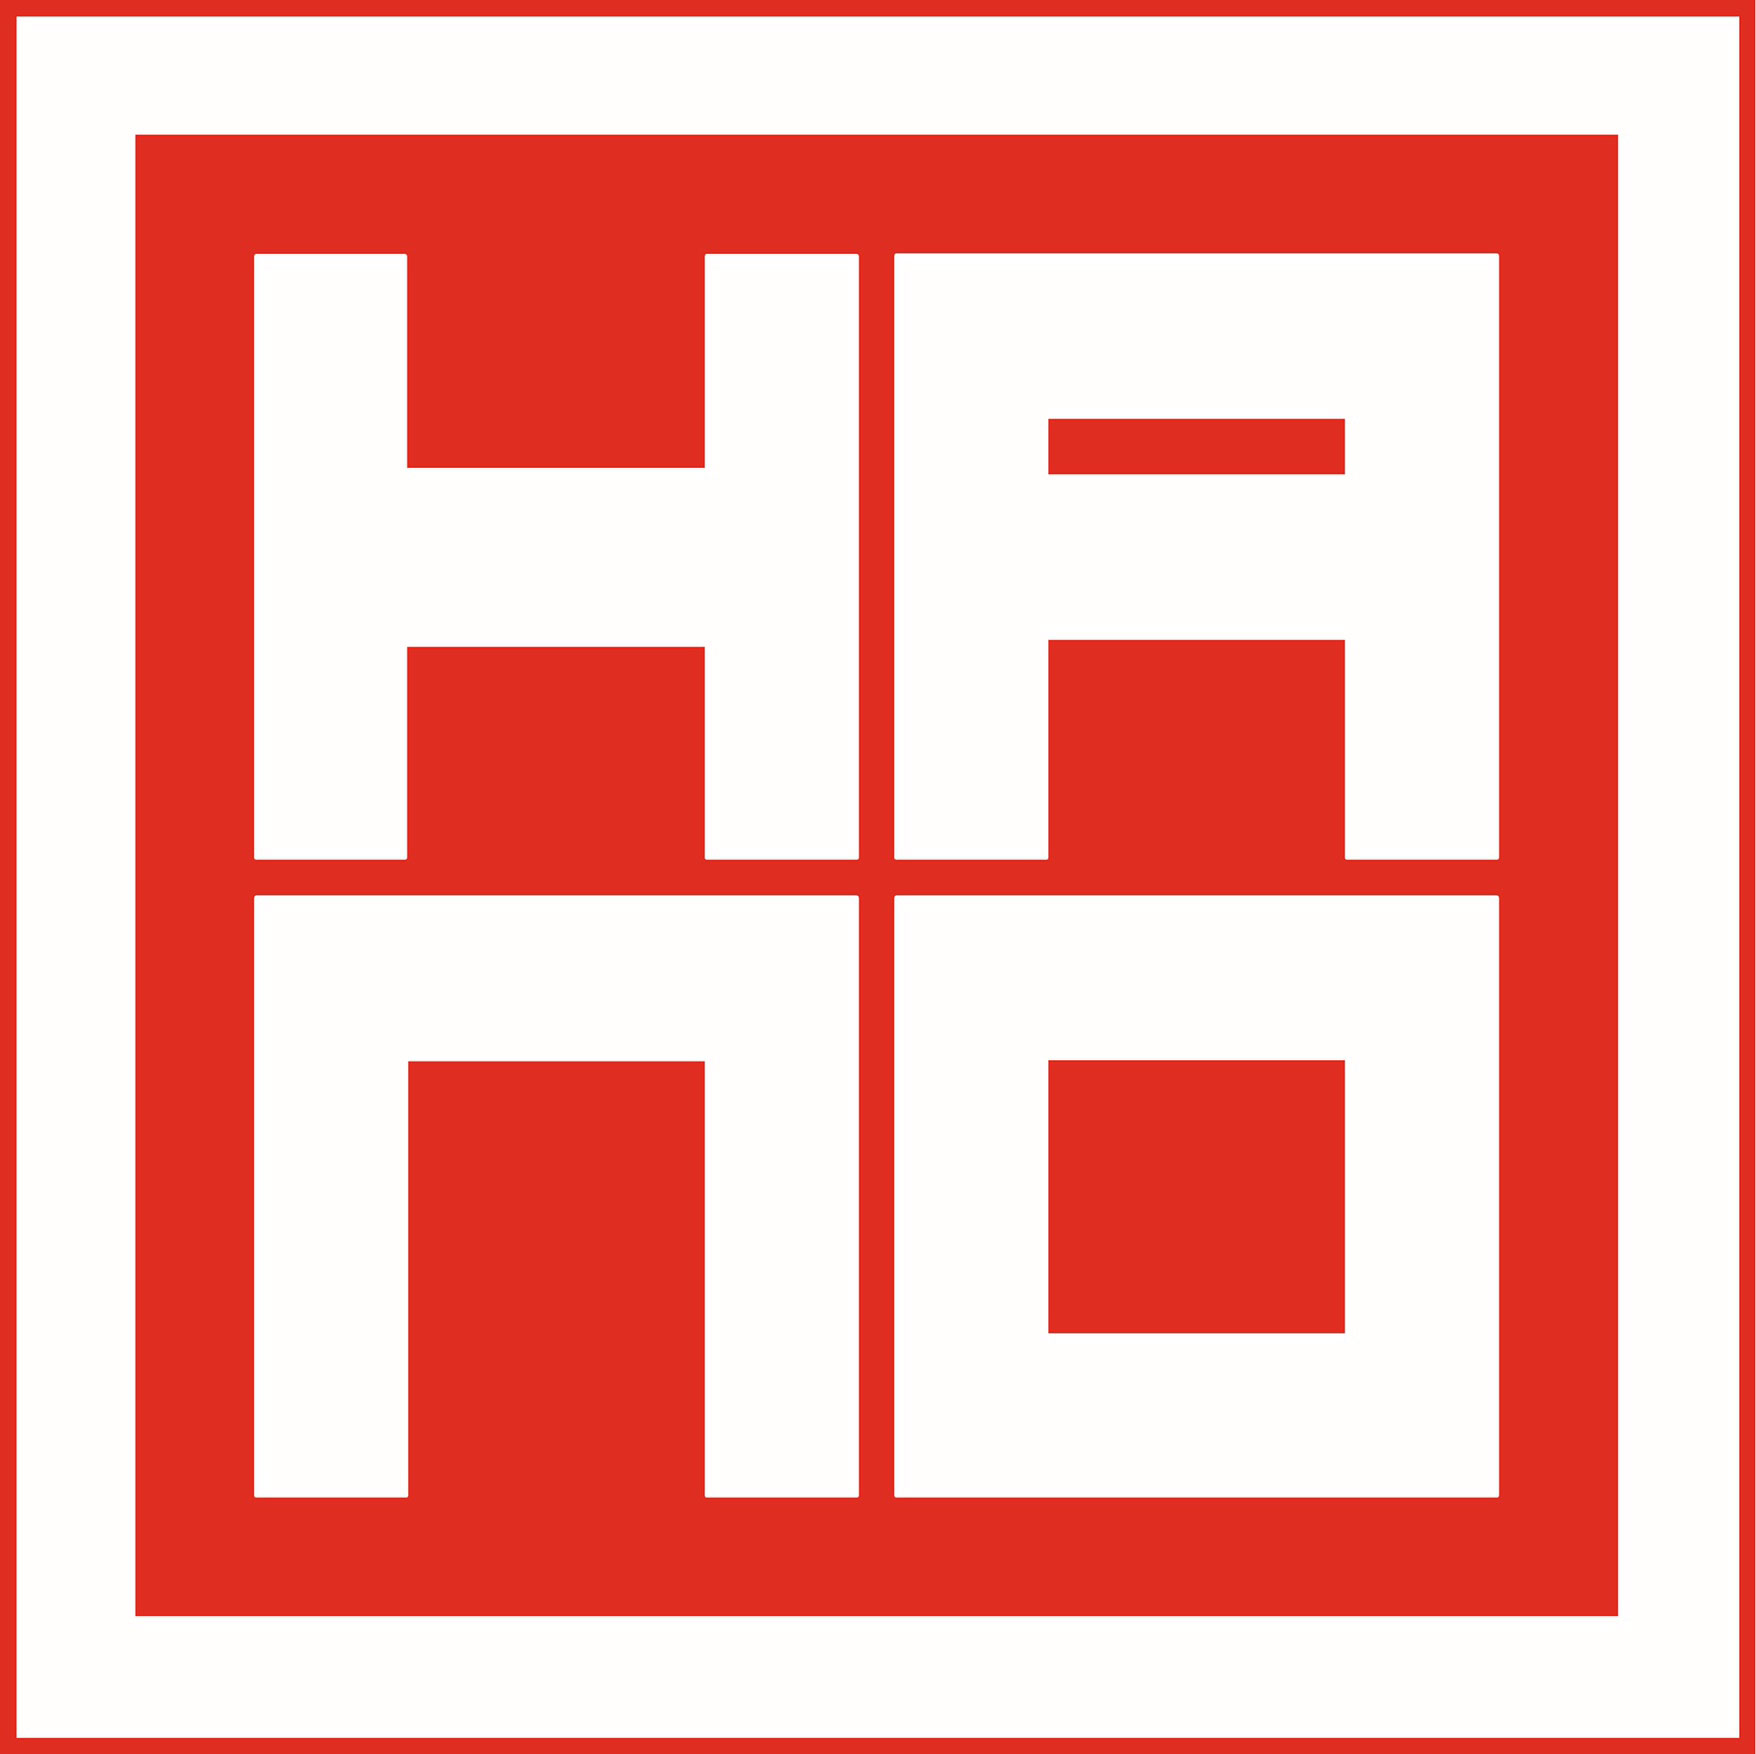 Hano.it - Rap Italiano e Internazionale Hano.it